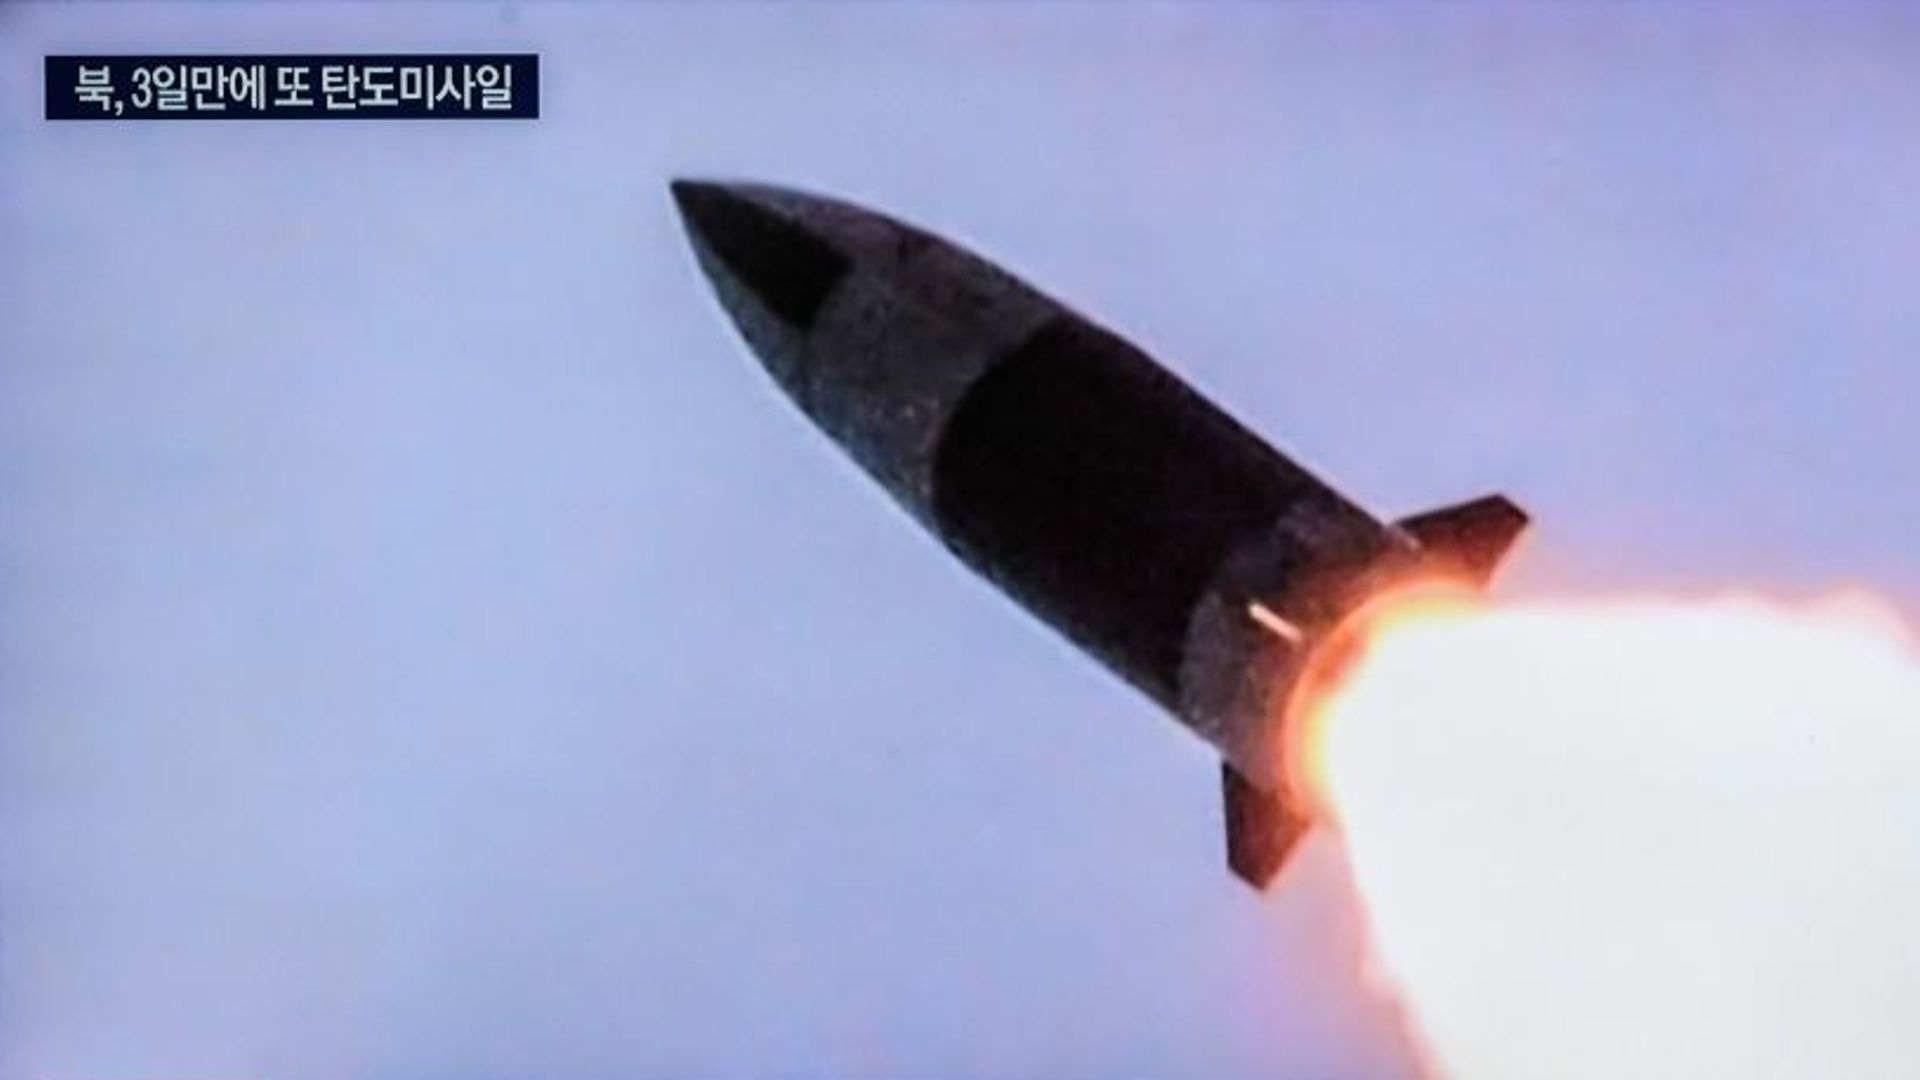 Image d'archive : Un écran de télévision à la gare de Yongsan à Séoul montre des images du lancement d'un missile par la Corée du Nord pendant un programme d'information. La Corée du Nord a tiré un missile balistique à courte portée (SRBM) en direction de